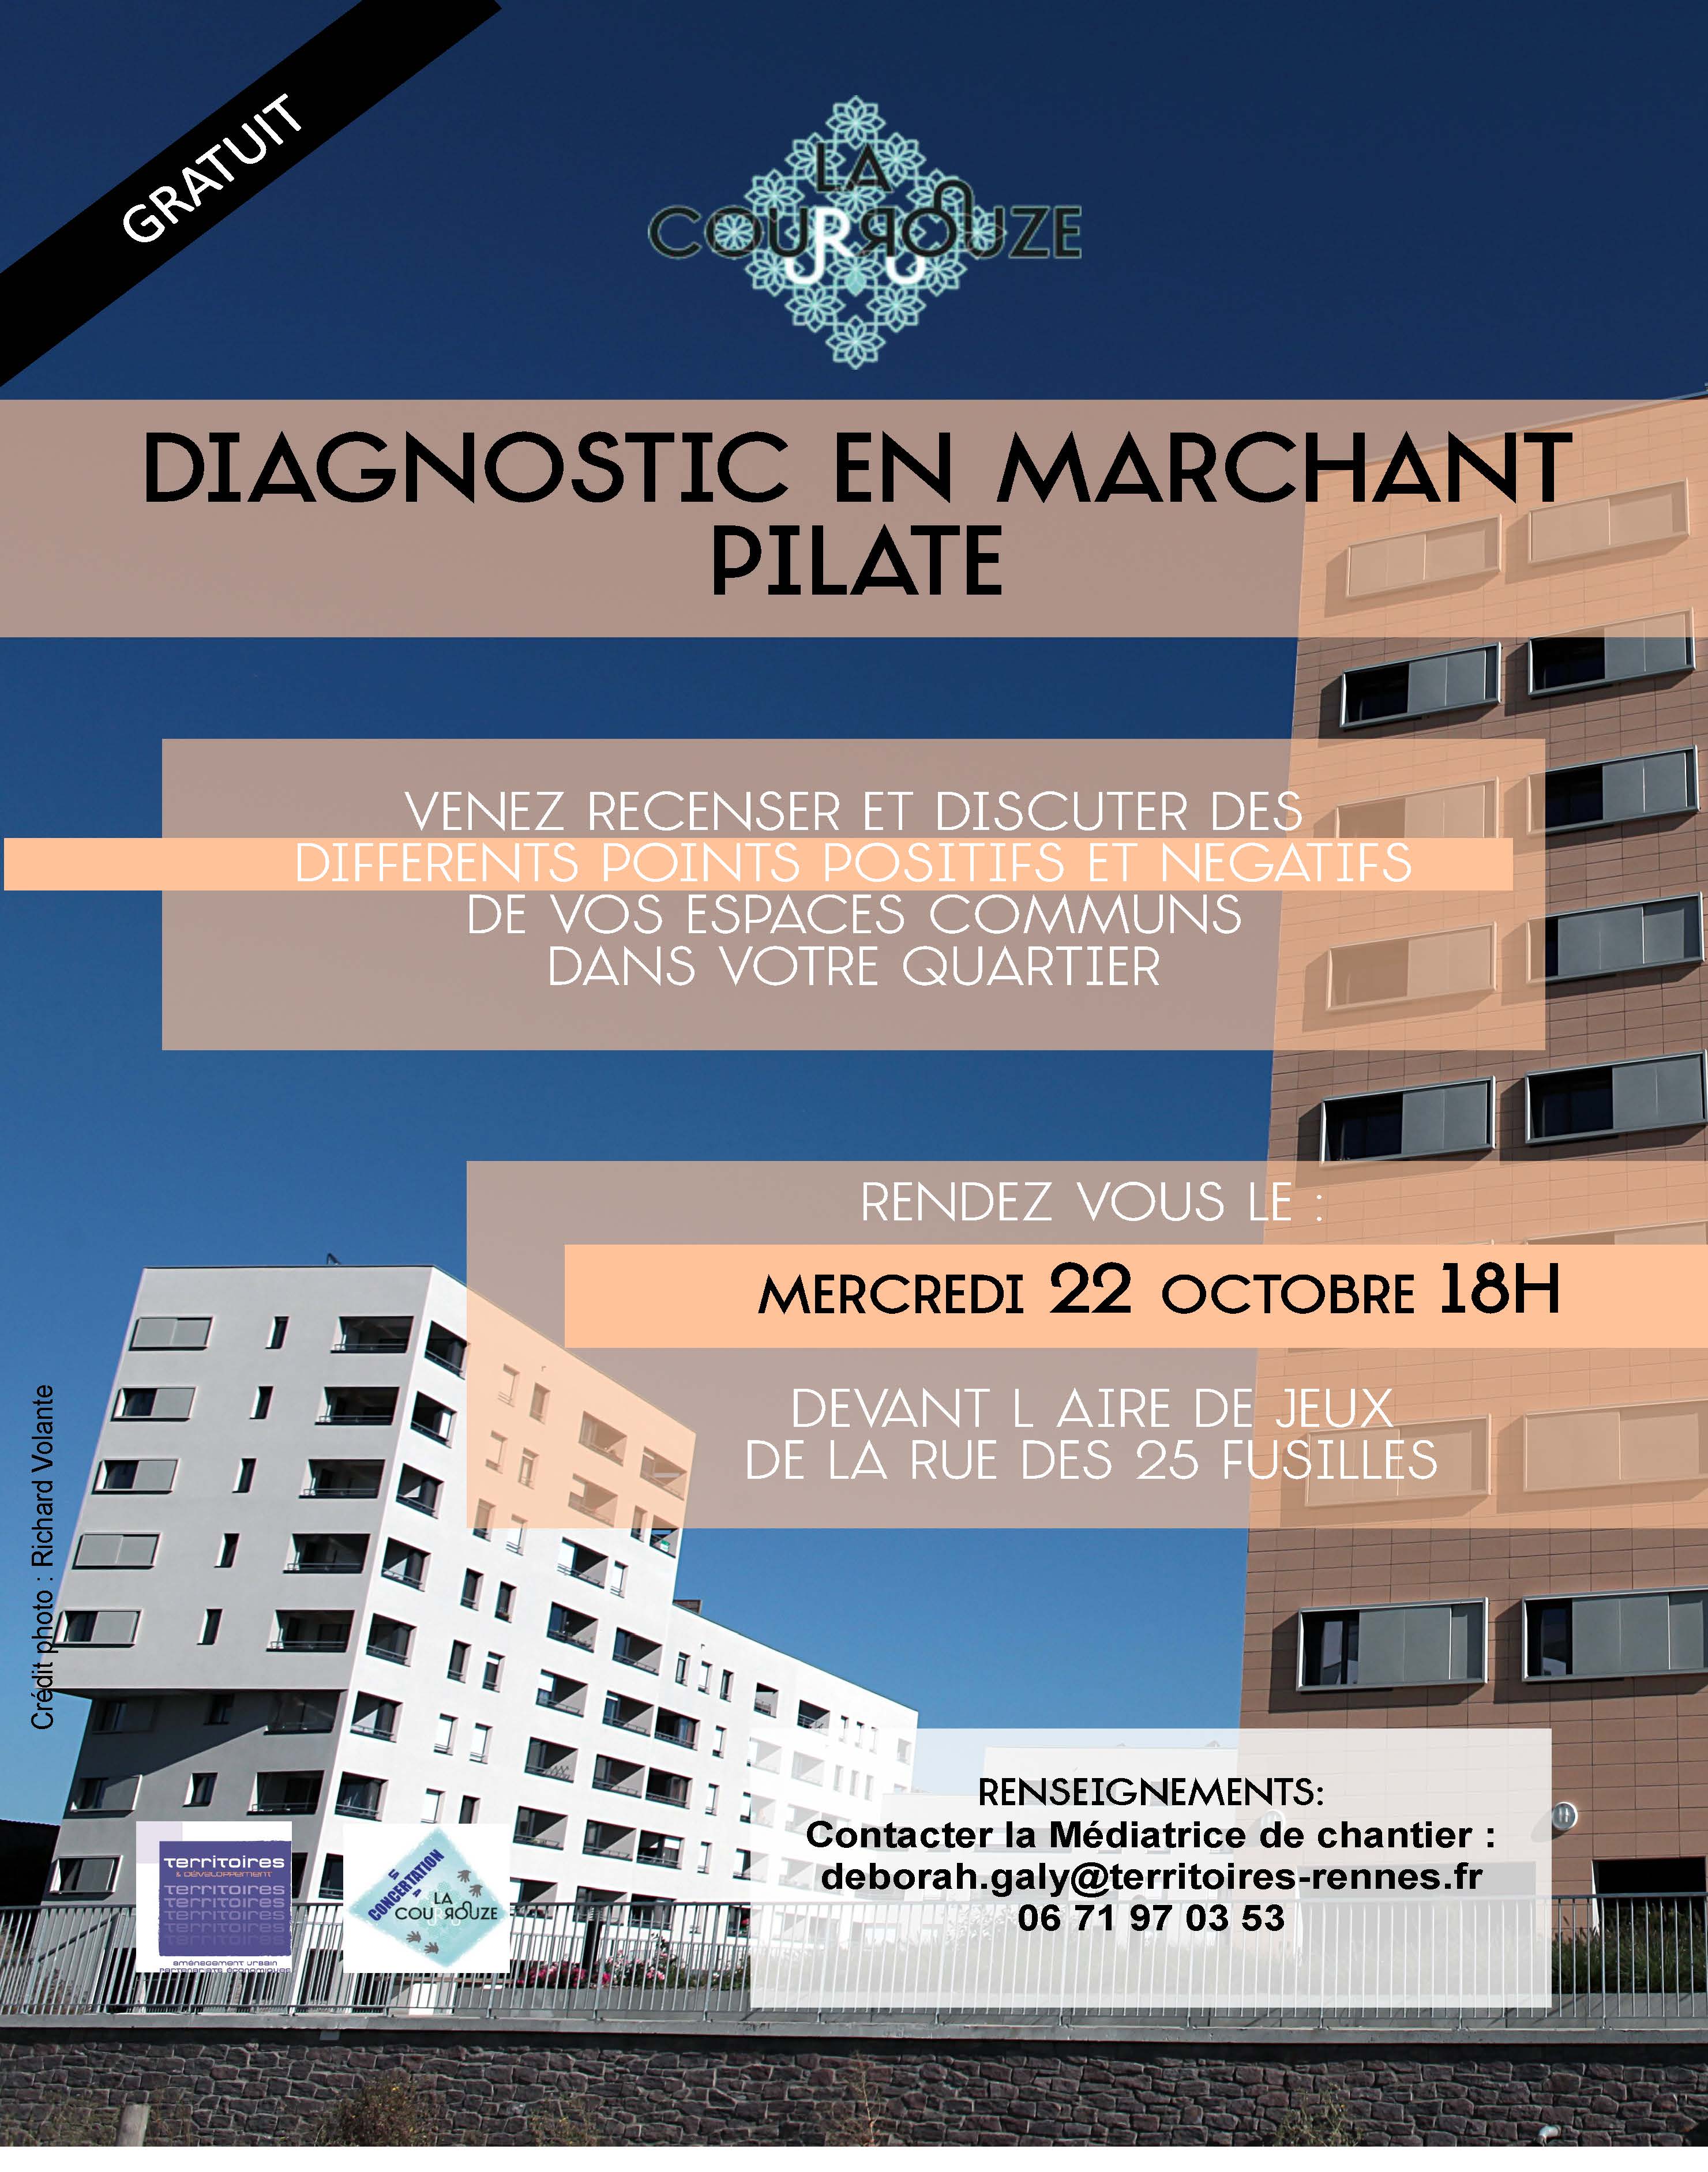 Affiche Diagnostic en Marchant Pilate 2014-1